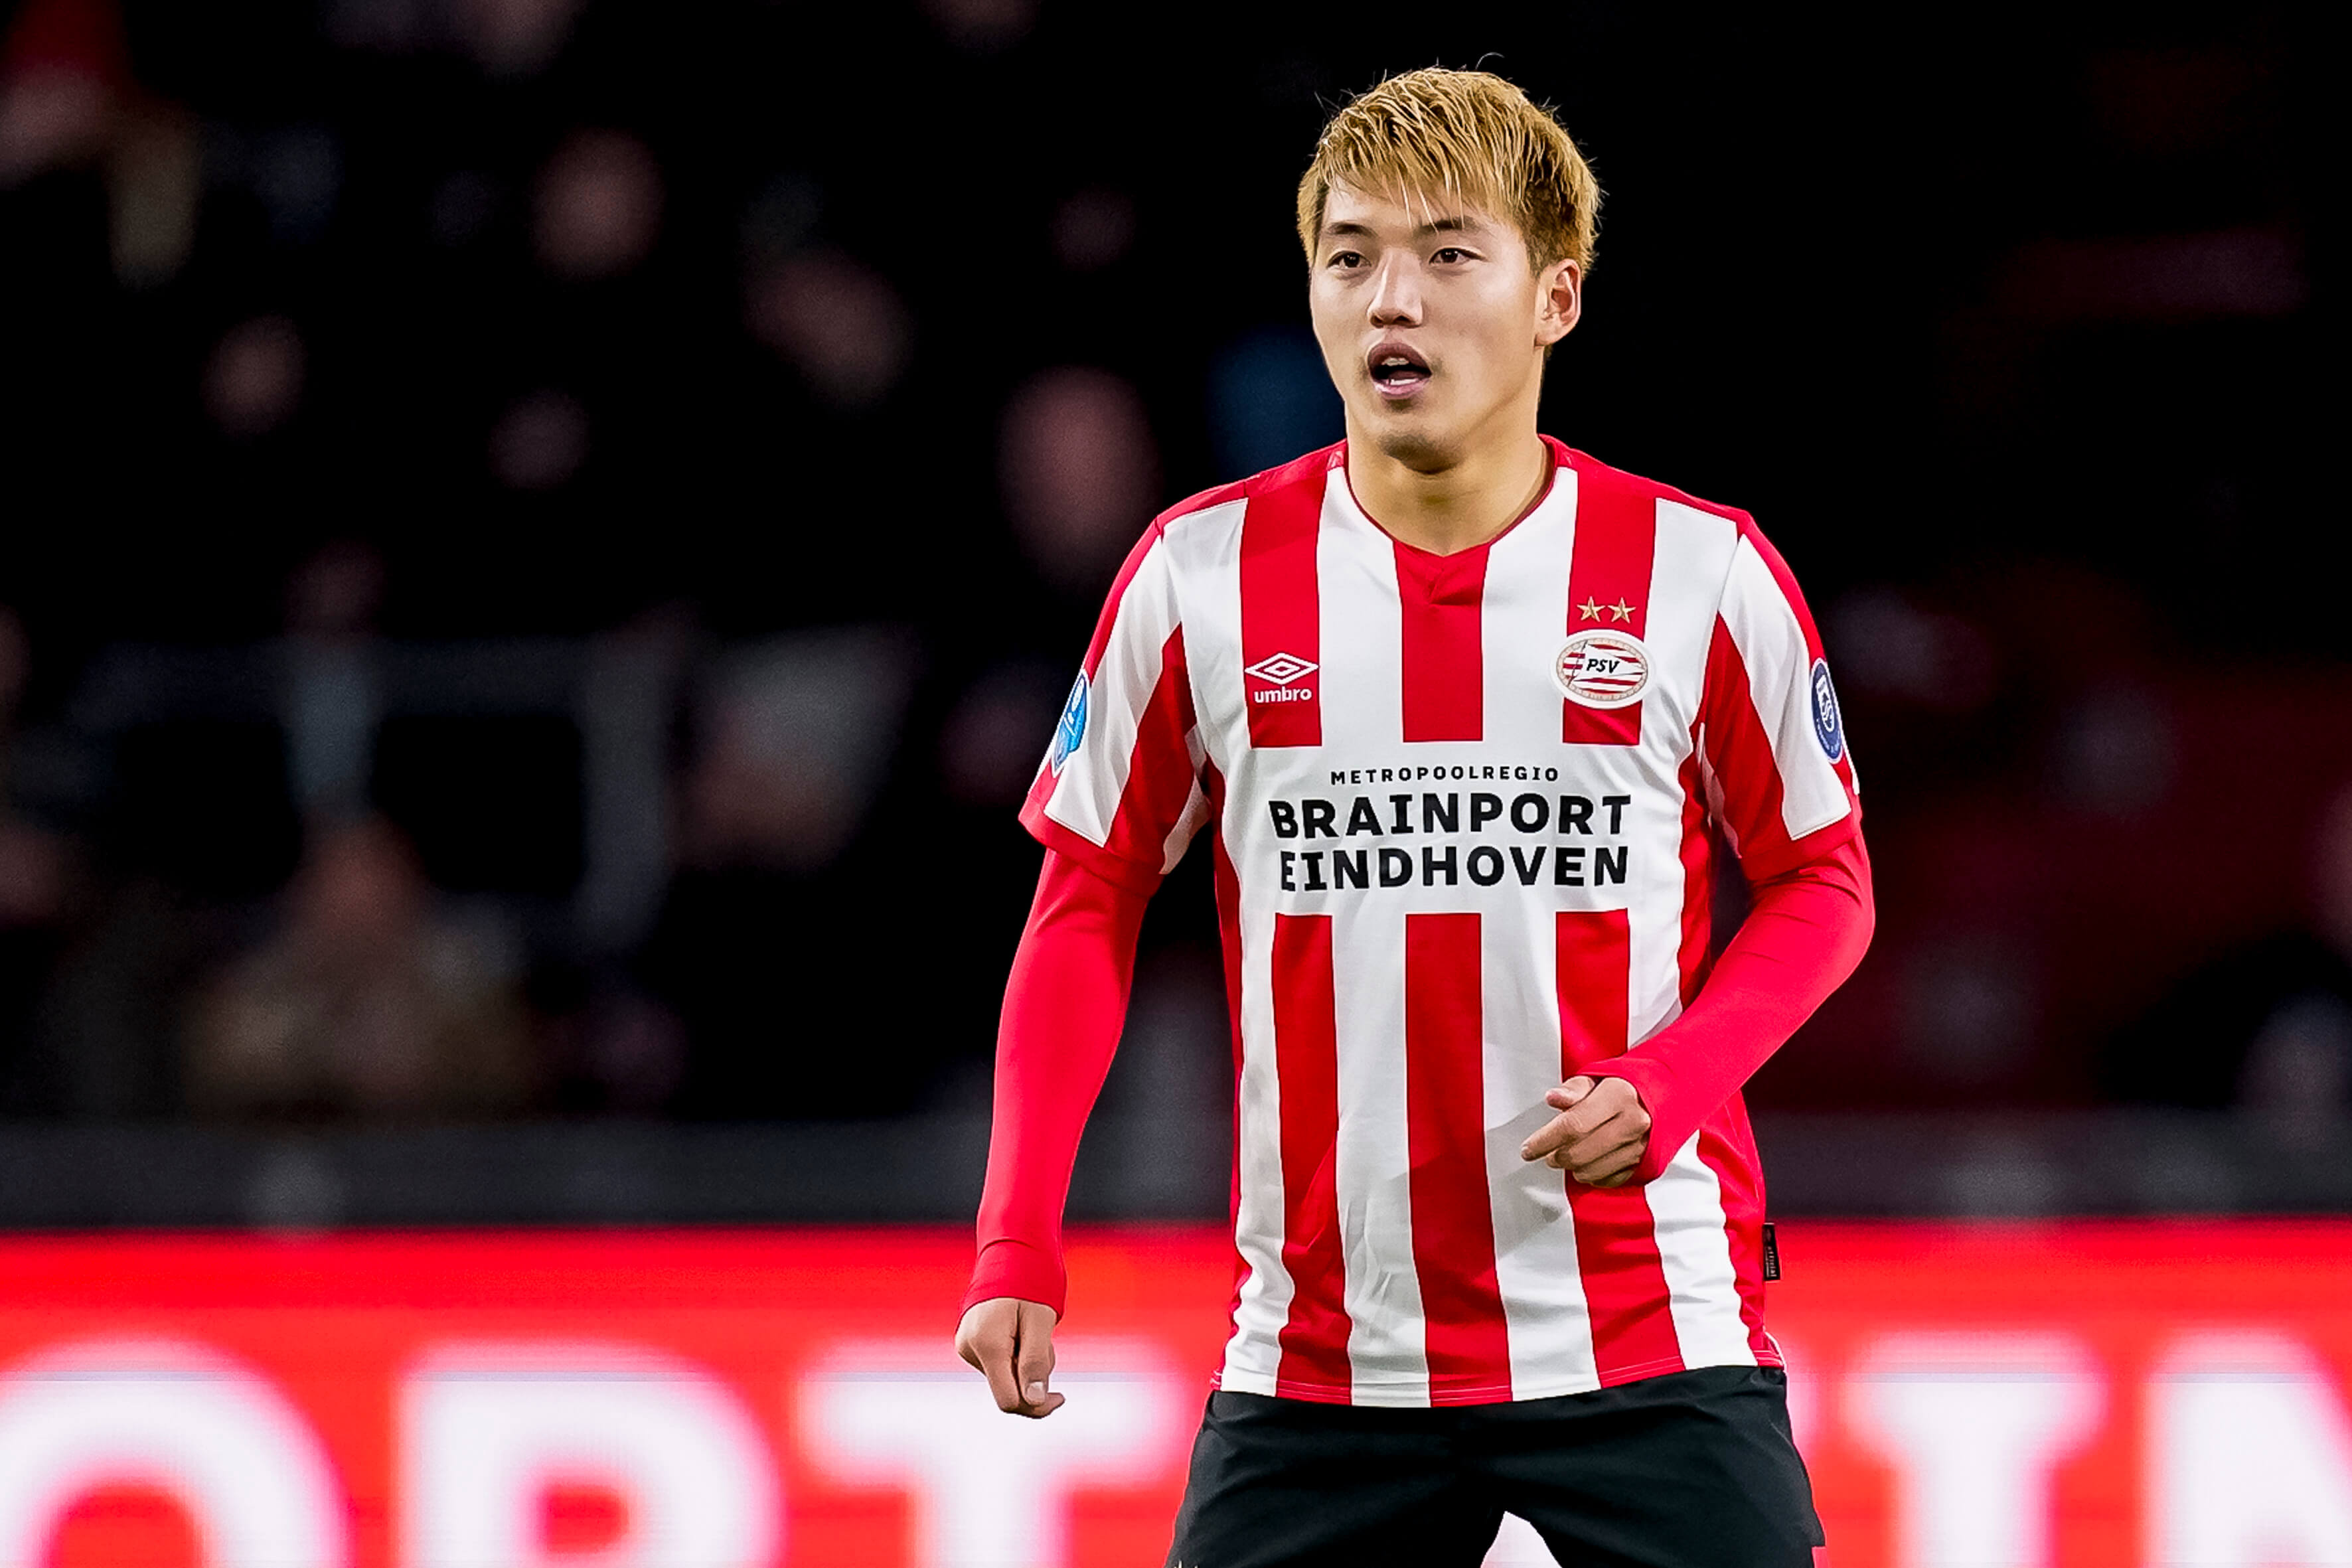 "Meerdere clubs informeerden naar huur Ritsu Doan, onbespreekbaar voor PSV"; image source: Pro Shots